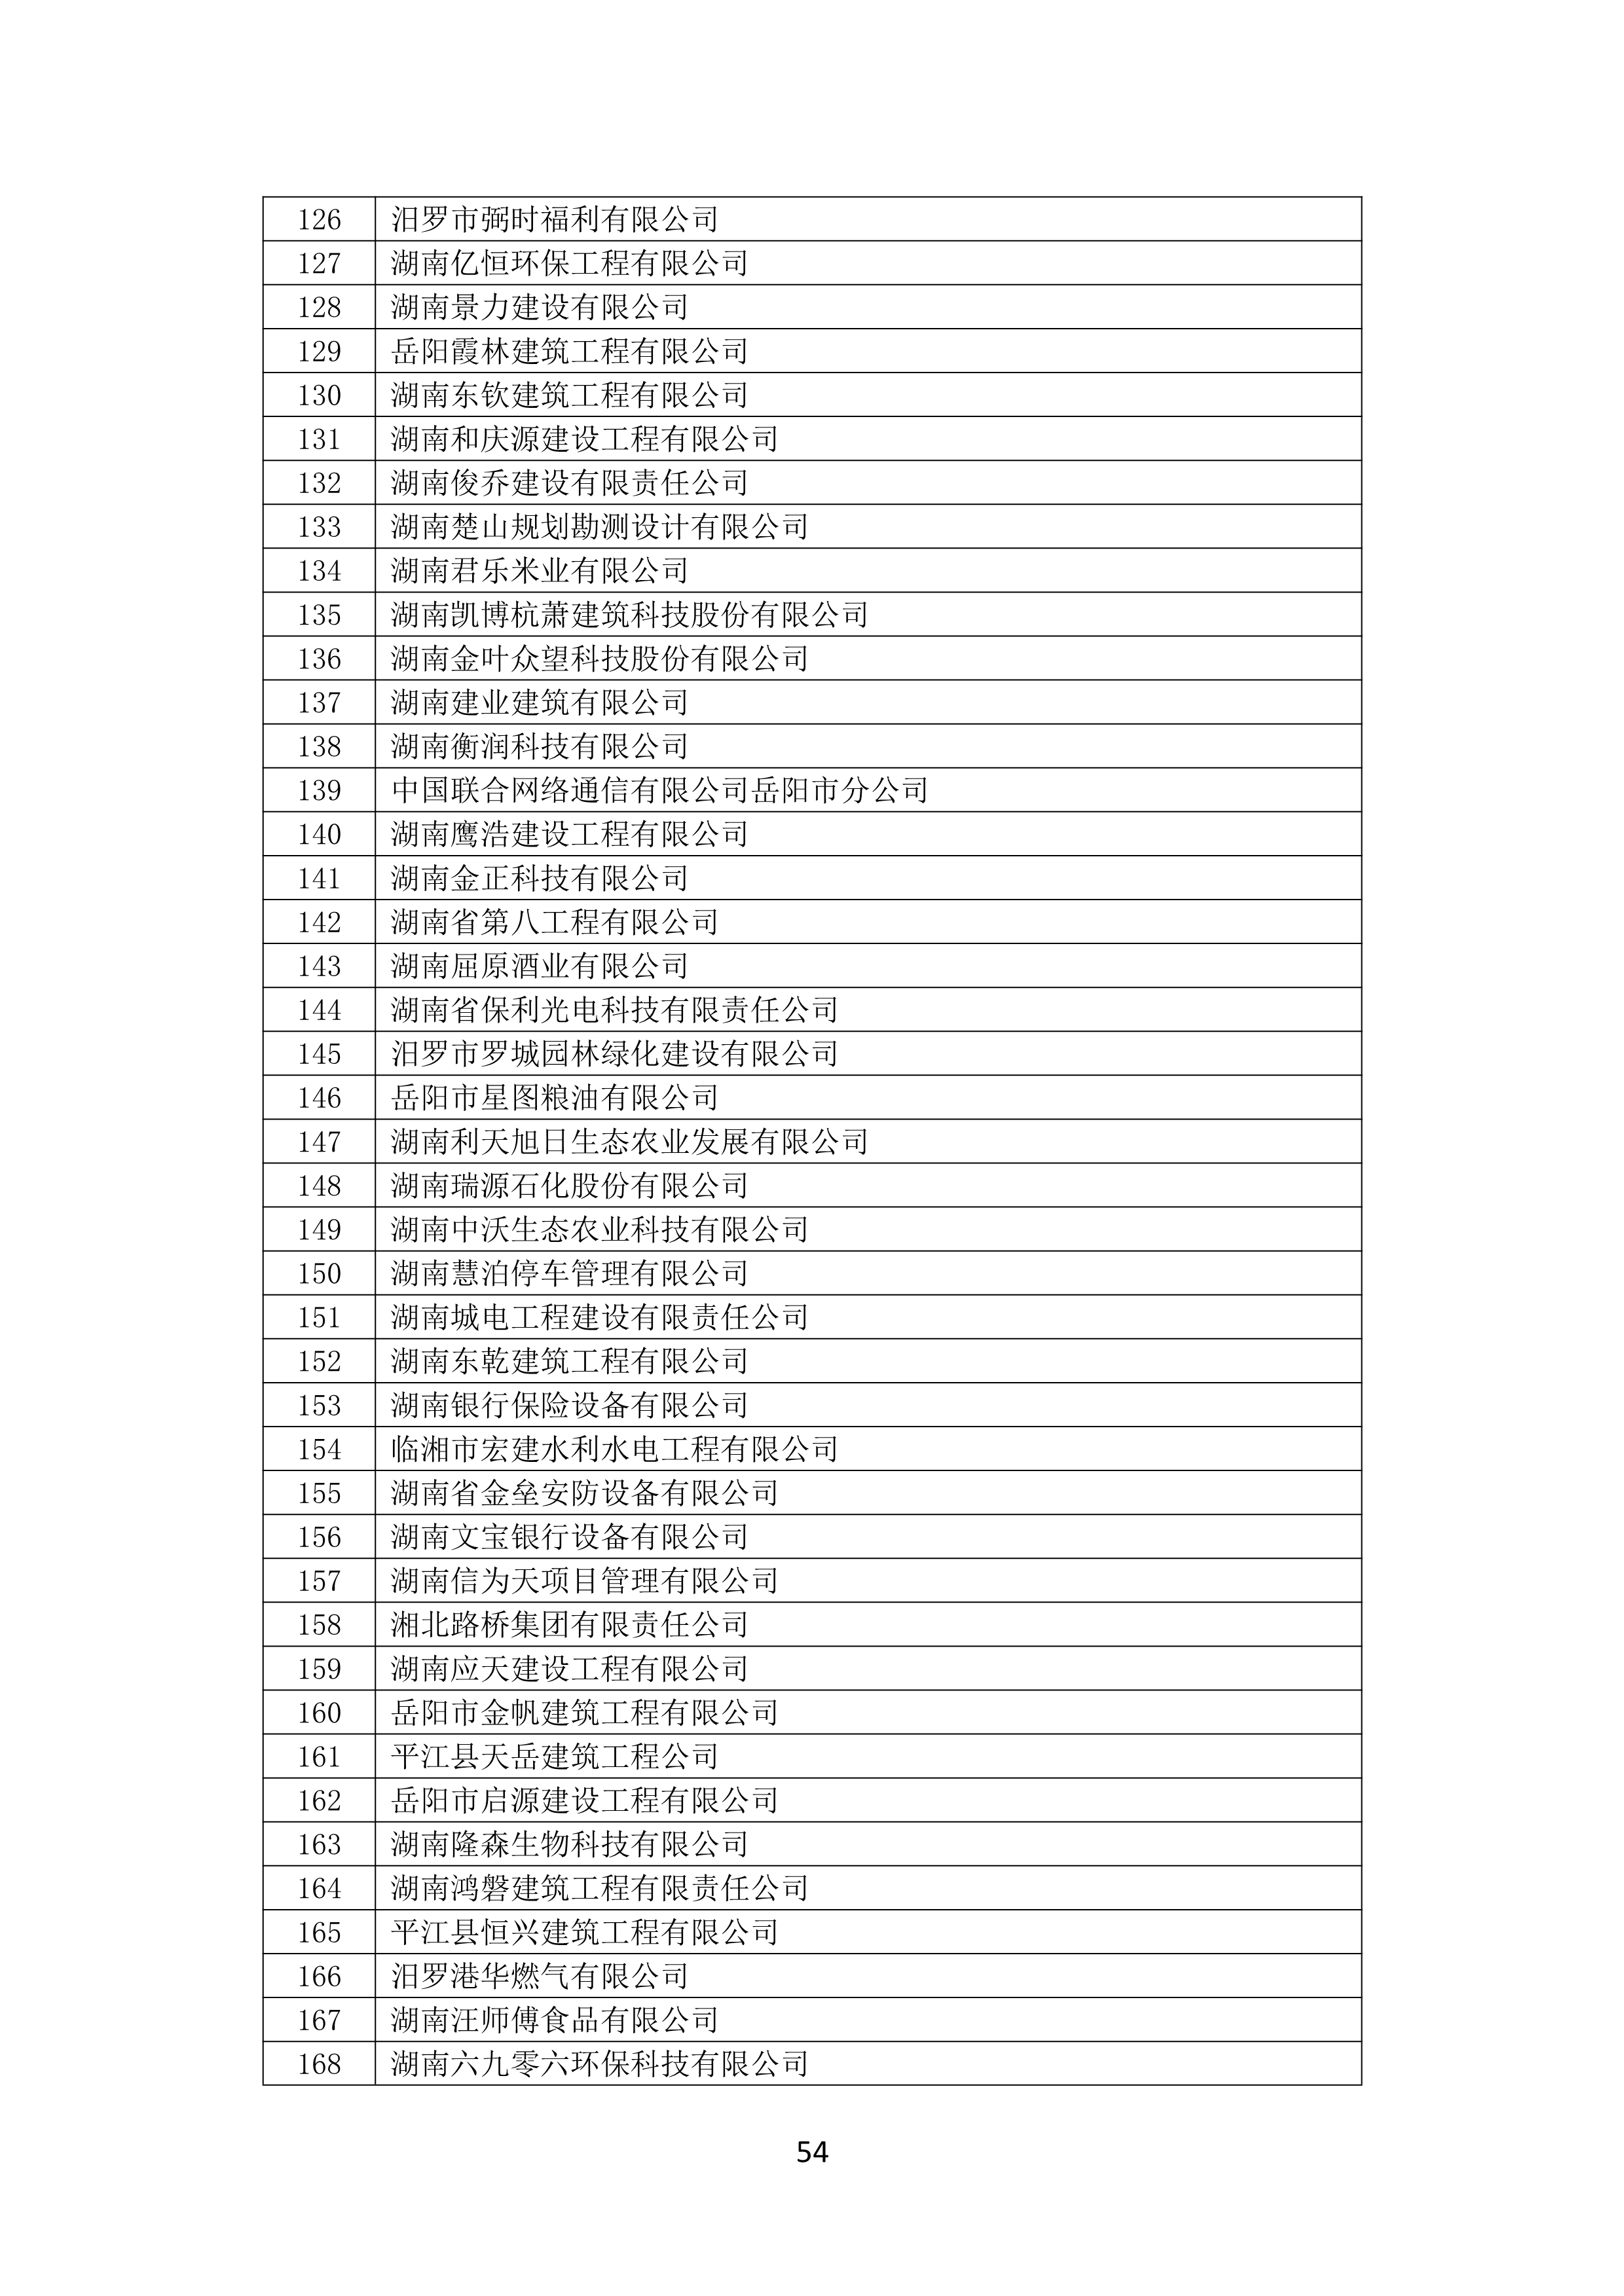 2021 年(nián)度湖南省守合同重信用企業名單_55.png